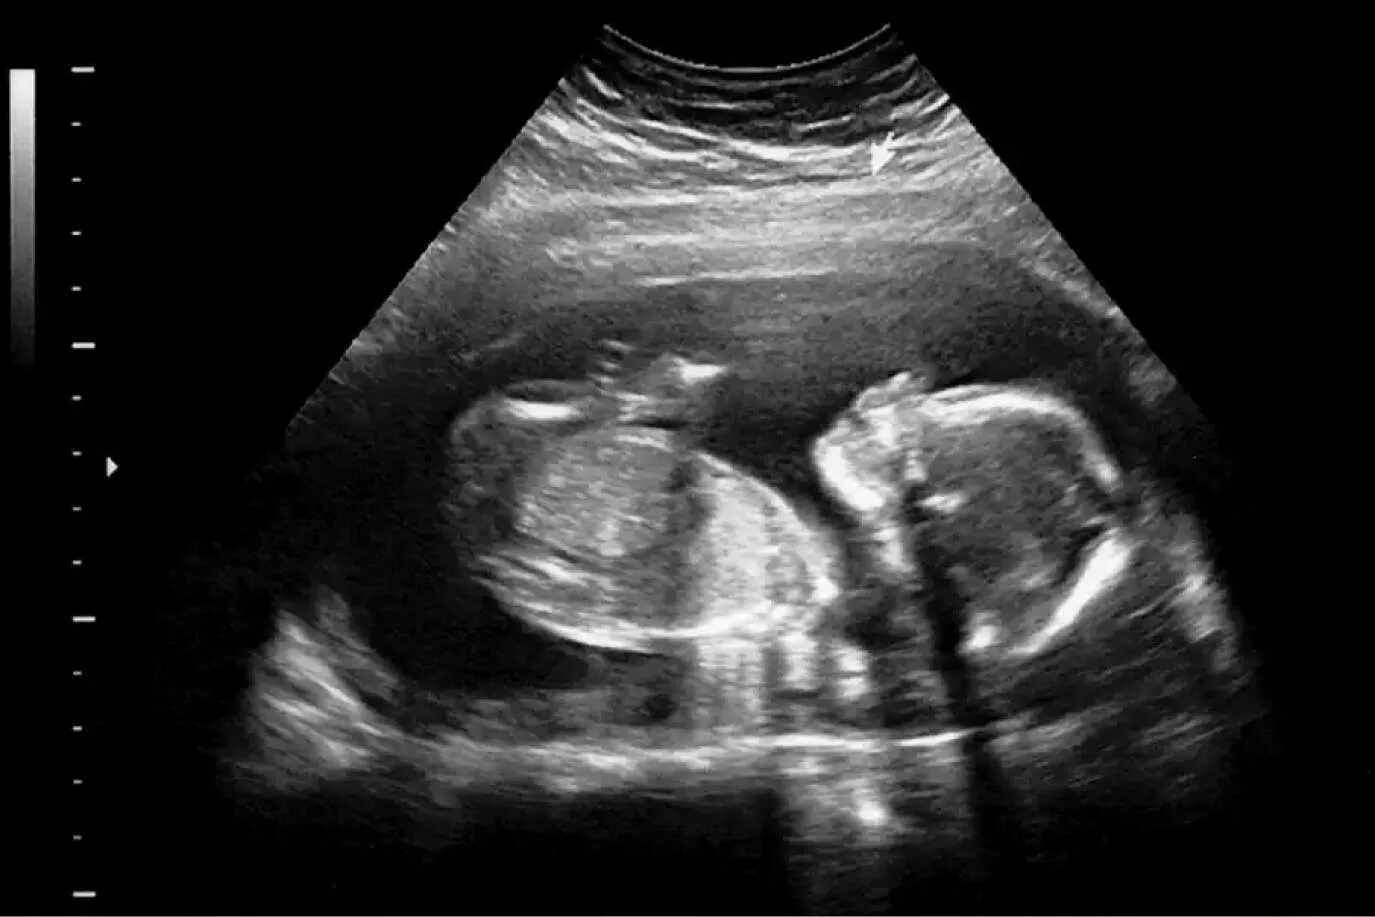 УЗИ девочки на 20 неделе беременности. УЗИ 20 недель беременности фото. УЗИ мальчика снимки 22 недели беременности. Фото плода на 20 неделе беременности УЗИ девочка. Малыш на 21 неделе беременности